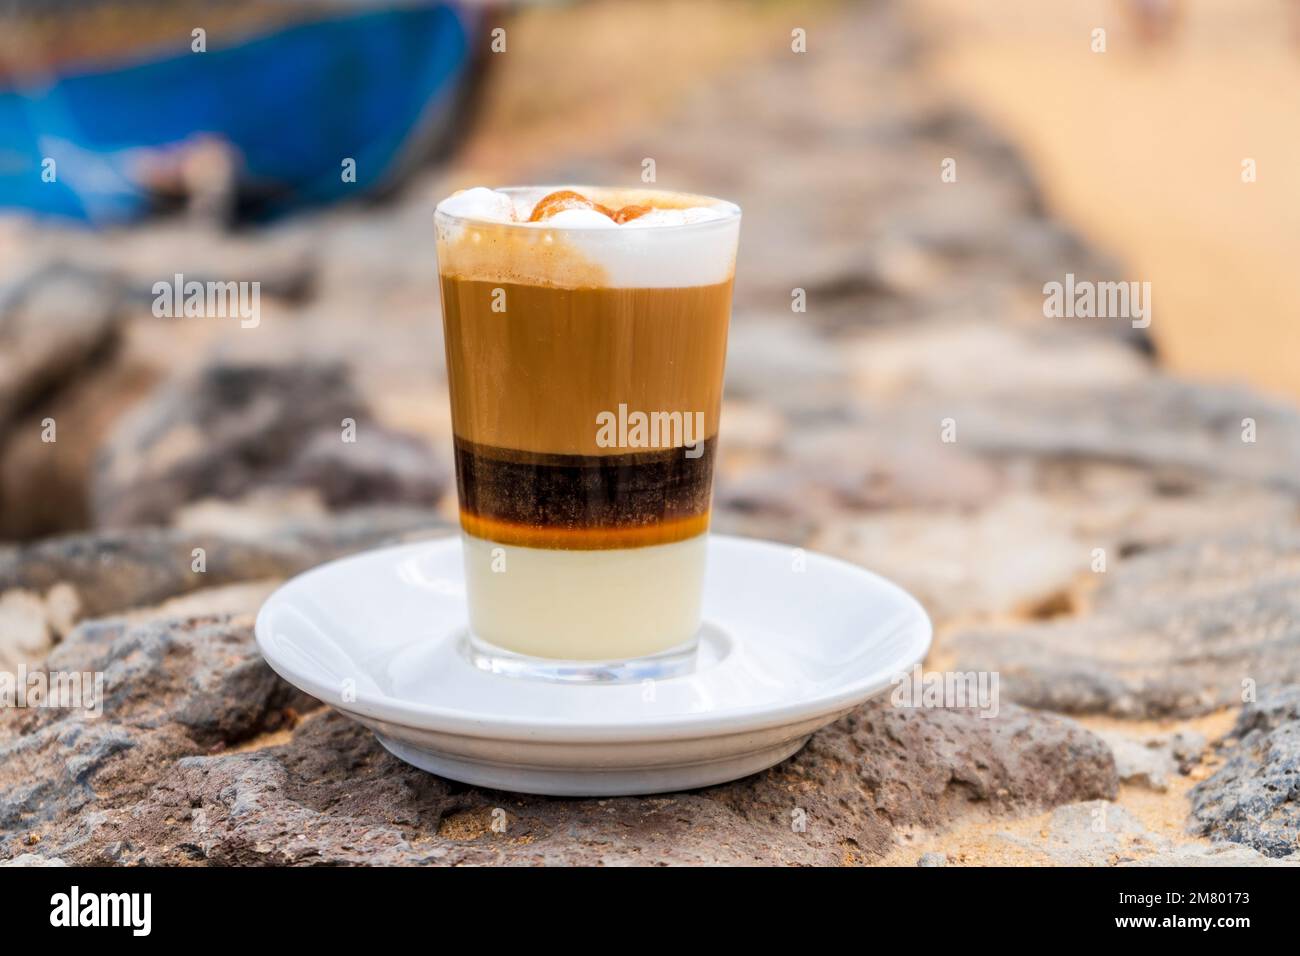 Délicieux café barraquito avec liqueur et lait condensé, typique de l'île des Canaries, la Graciosa, Espagne Banque D'Images